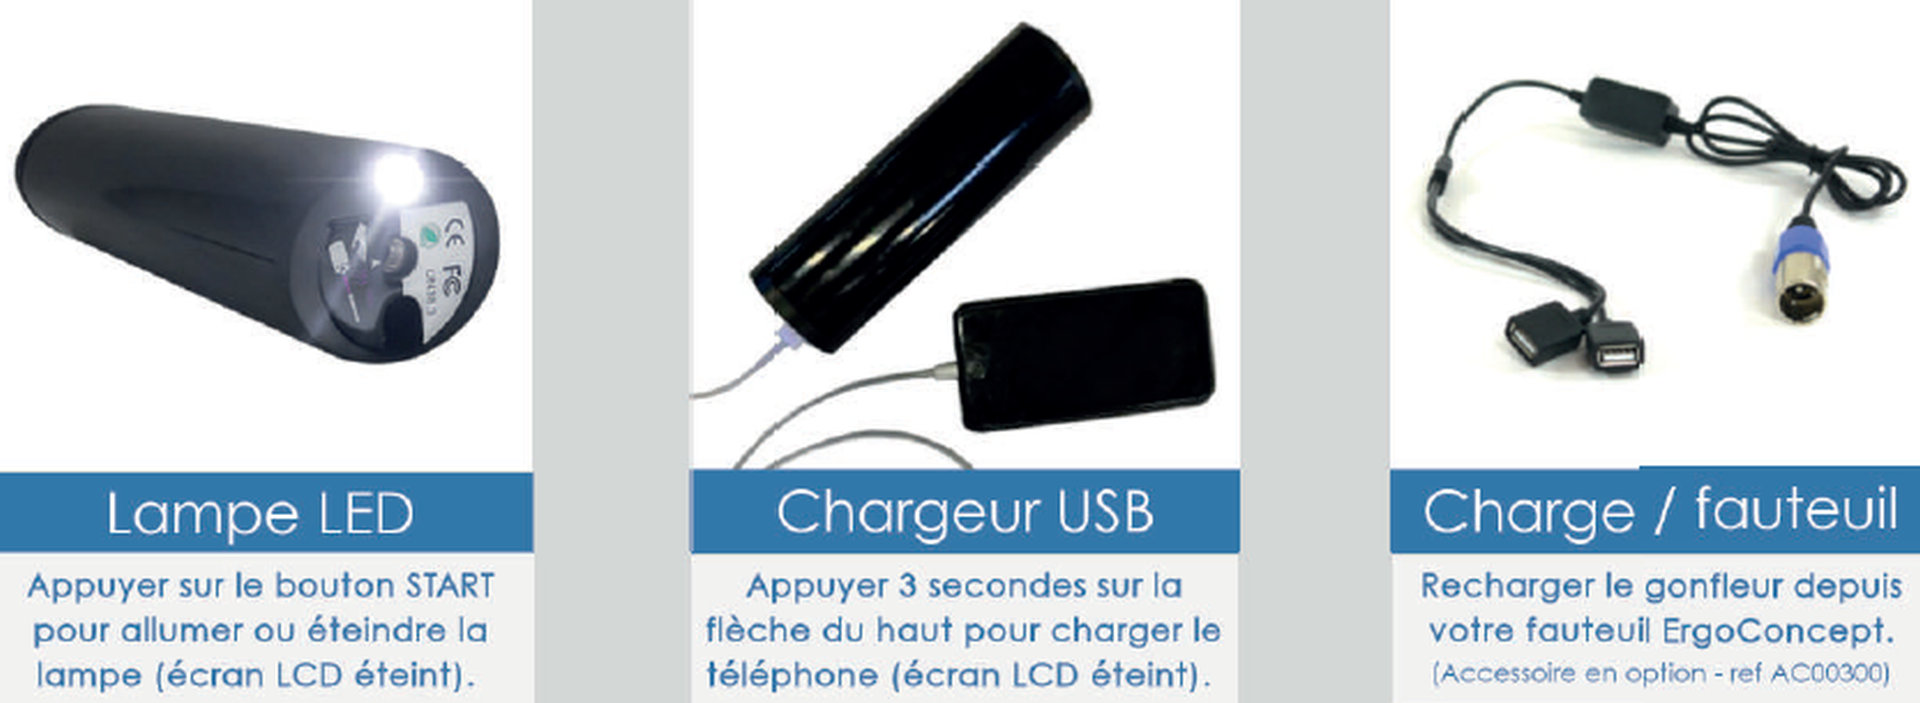 DIFFUSION 558348 Gonfleur portable rechargeable USB bleu et blanc - Ø6,7 x  H.10,5 cm